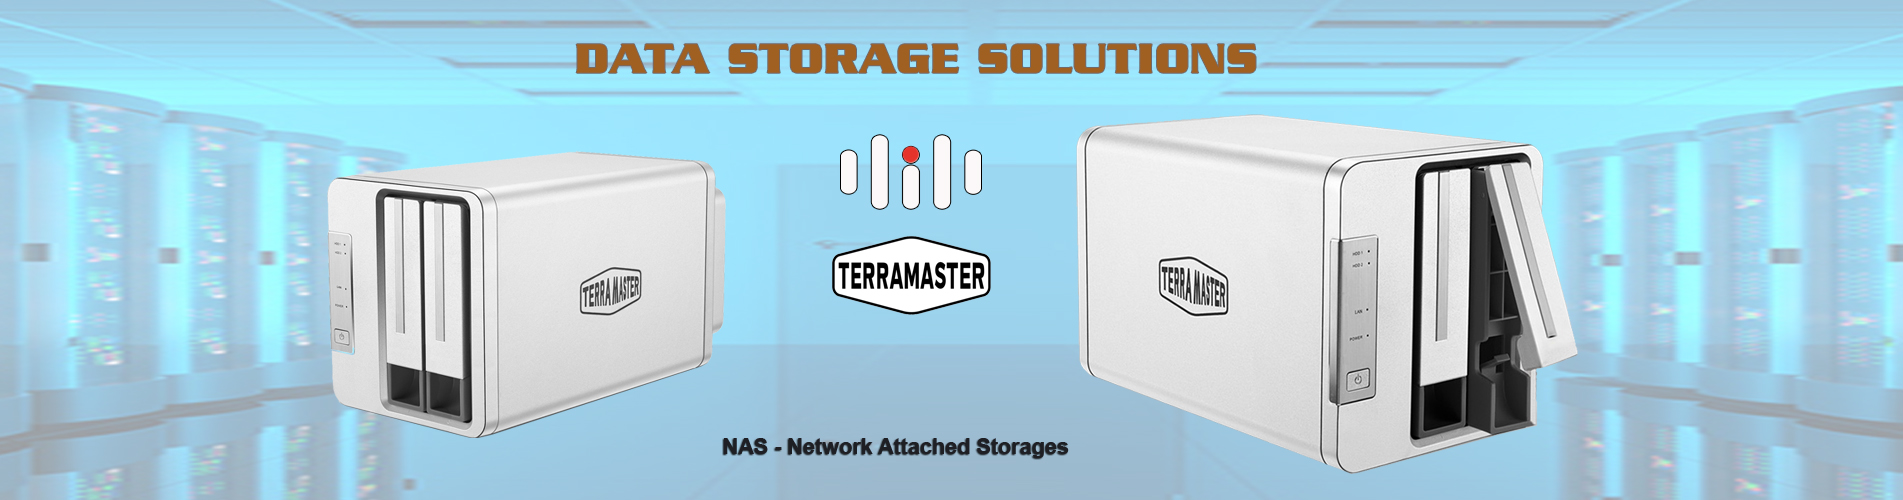 TerraMaster Data Storages